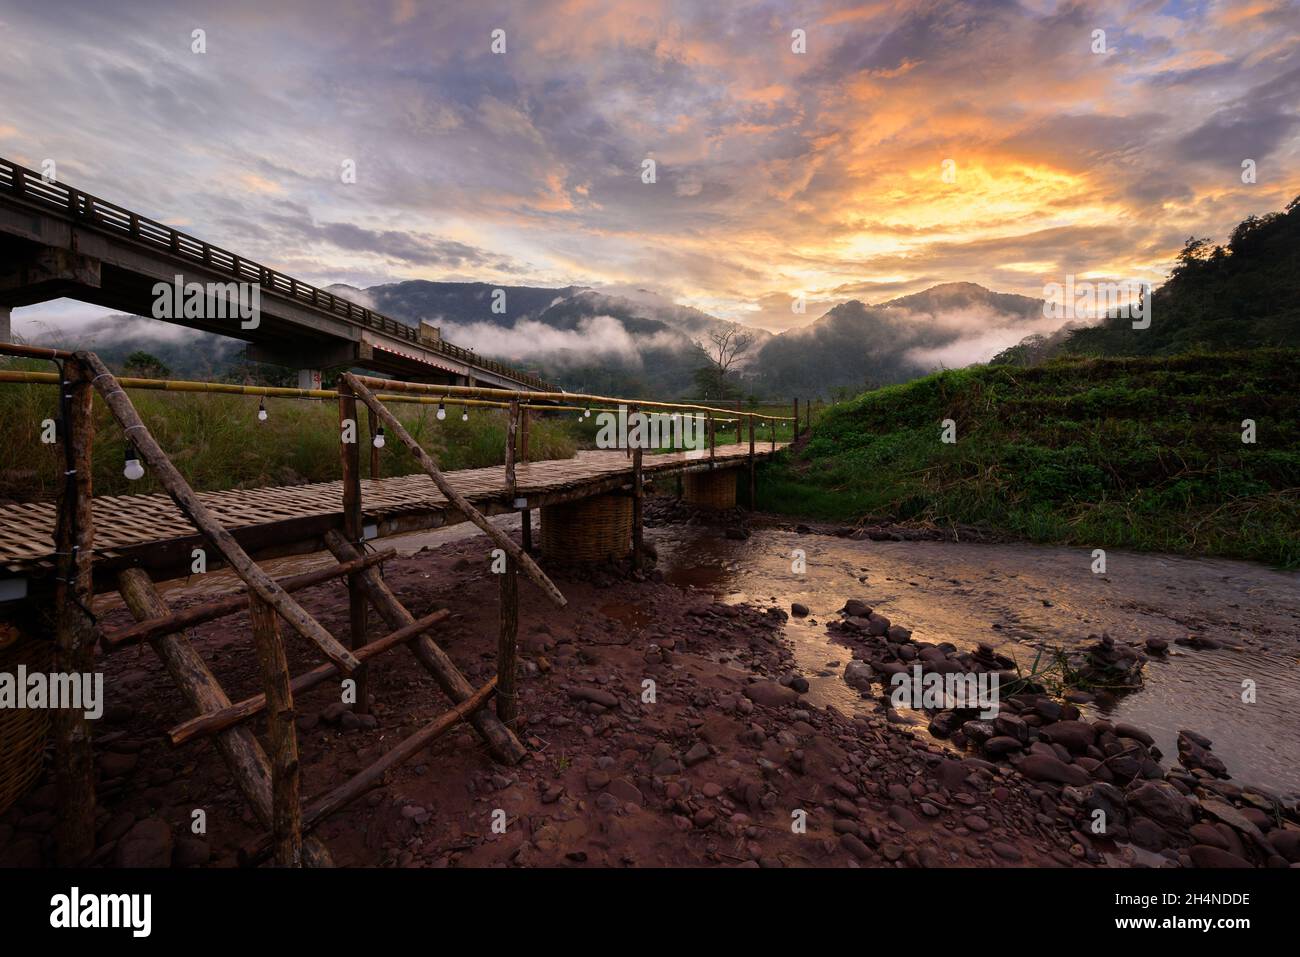 Schöne Landschaft szenische der hölzernen Bambusbrücke mit dem Nebel und dramatischen Himmel Hintergrund in der Sonnenuntergangszeit bei Sapun in der Provinz Nan, nördlich von T Stockfoto